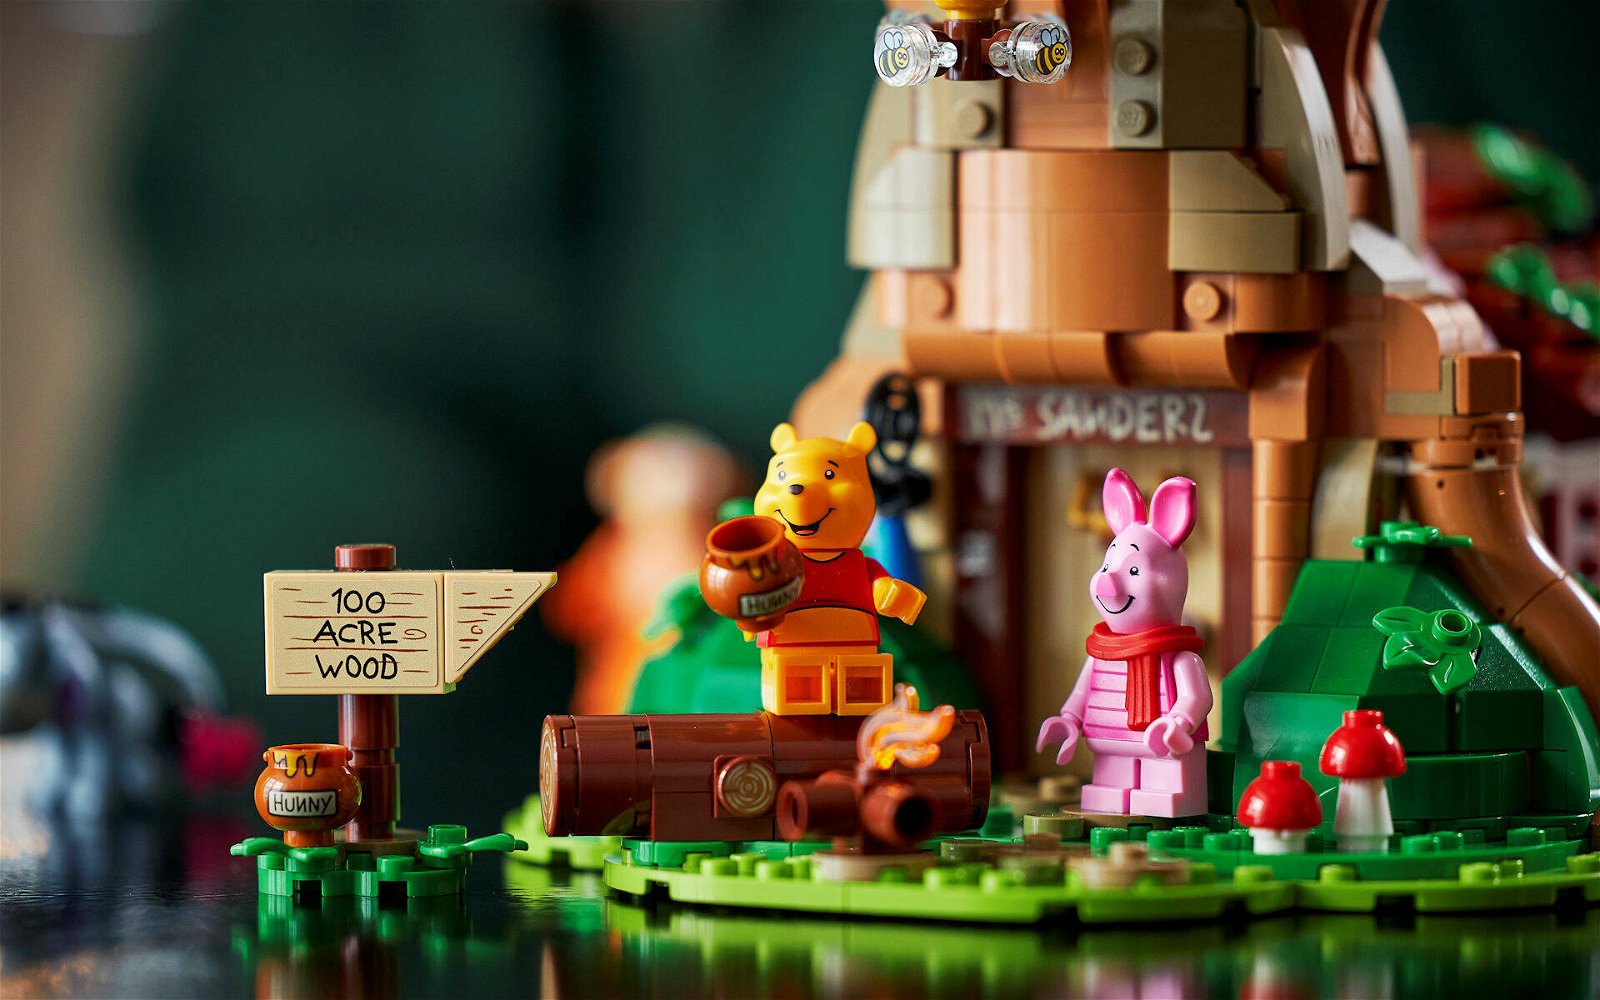 Immagine di LEGO: ecco il nuovo set Ideas #21326 Winnie the Pooh